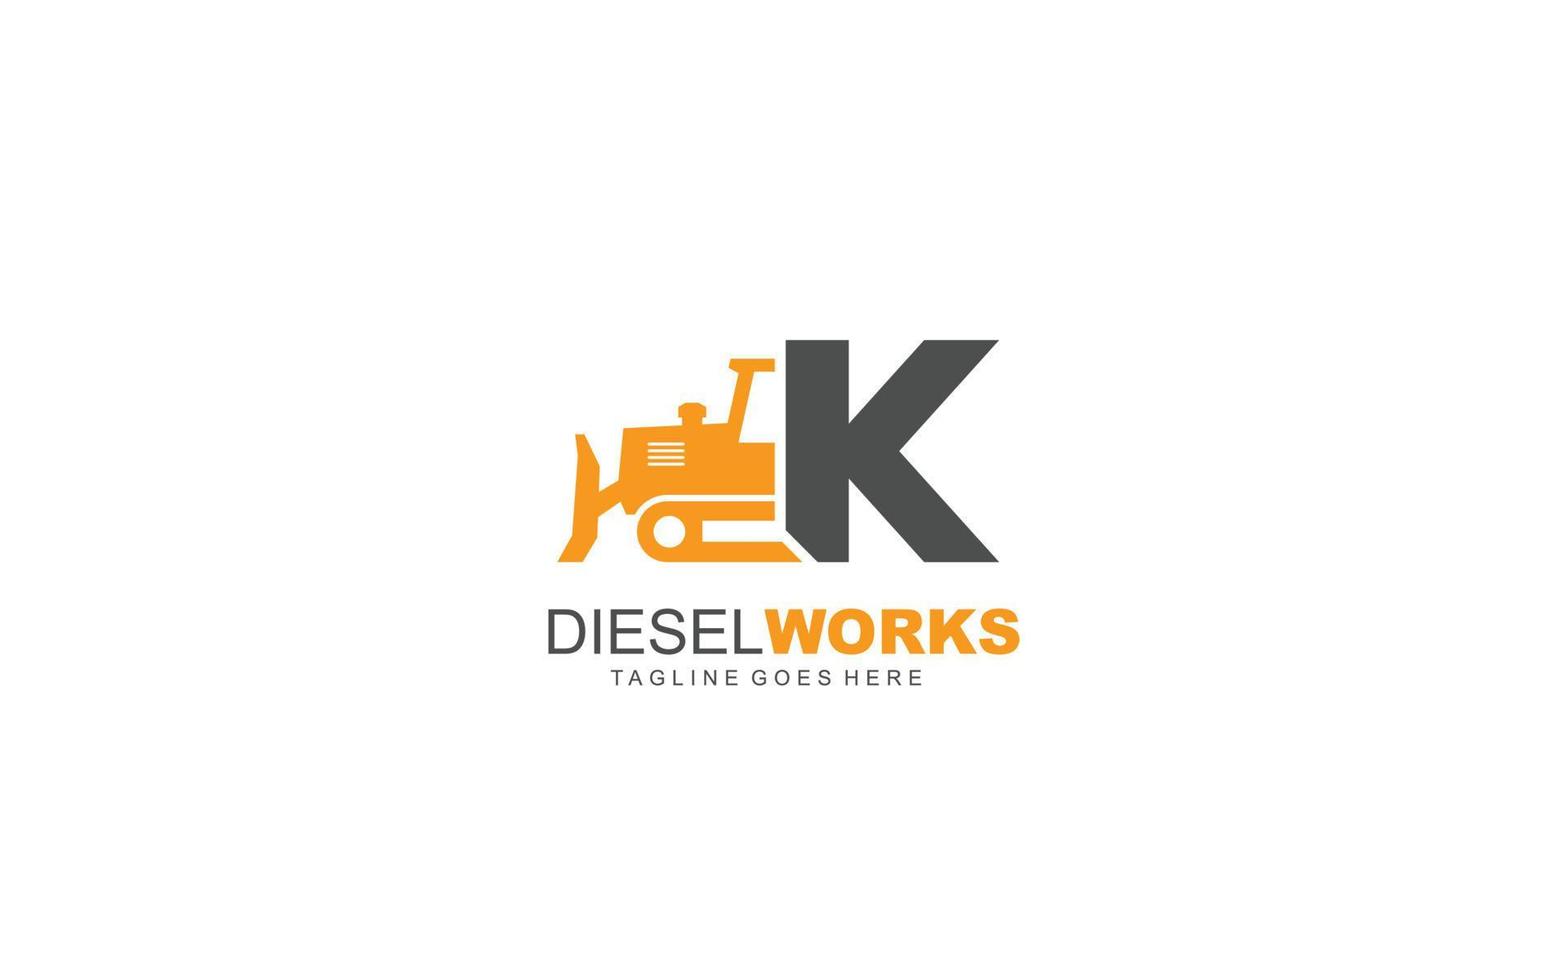 Excavadora de logotipo k para empresa constructora. ilustración de vector de plantilla de equipo pesado para su marca.